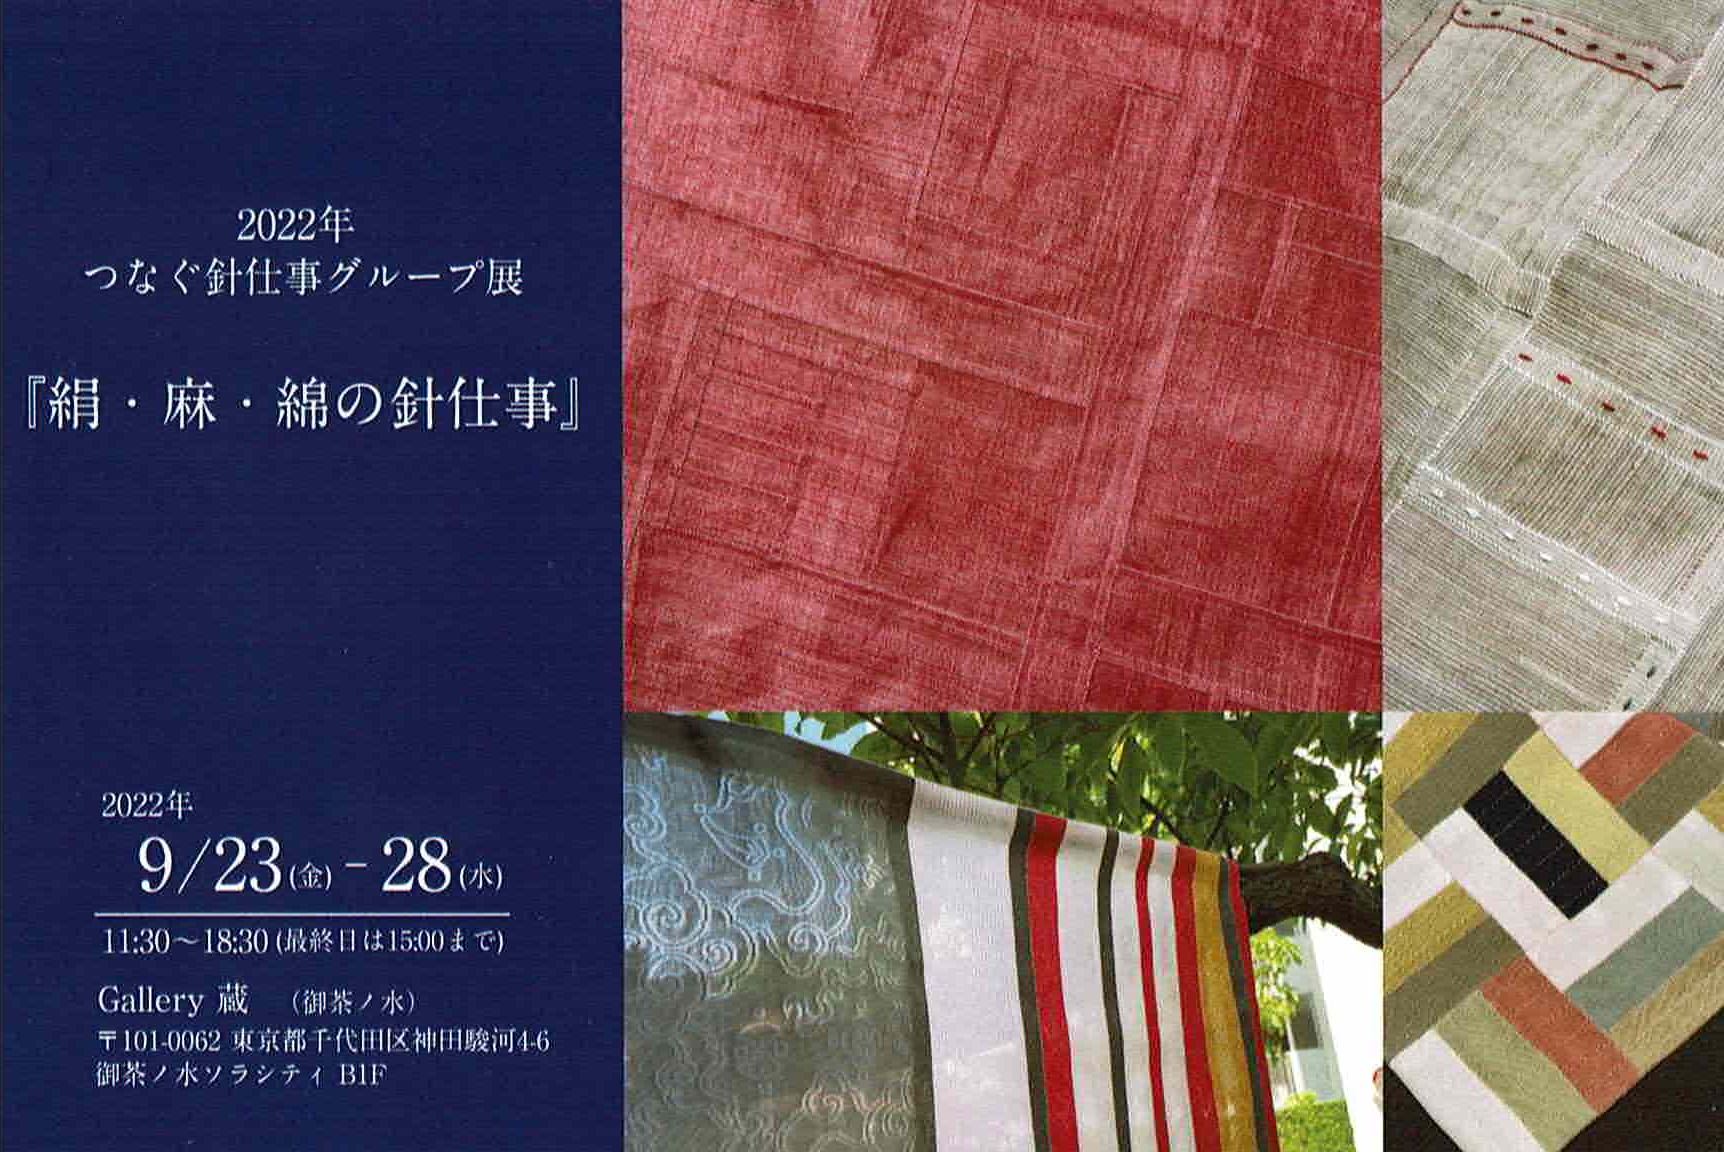 【終了】2022年つなぐ針仕事グループ展『絹・麻・綿の針仕事』